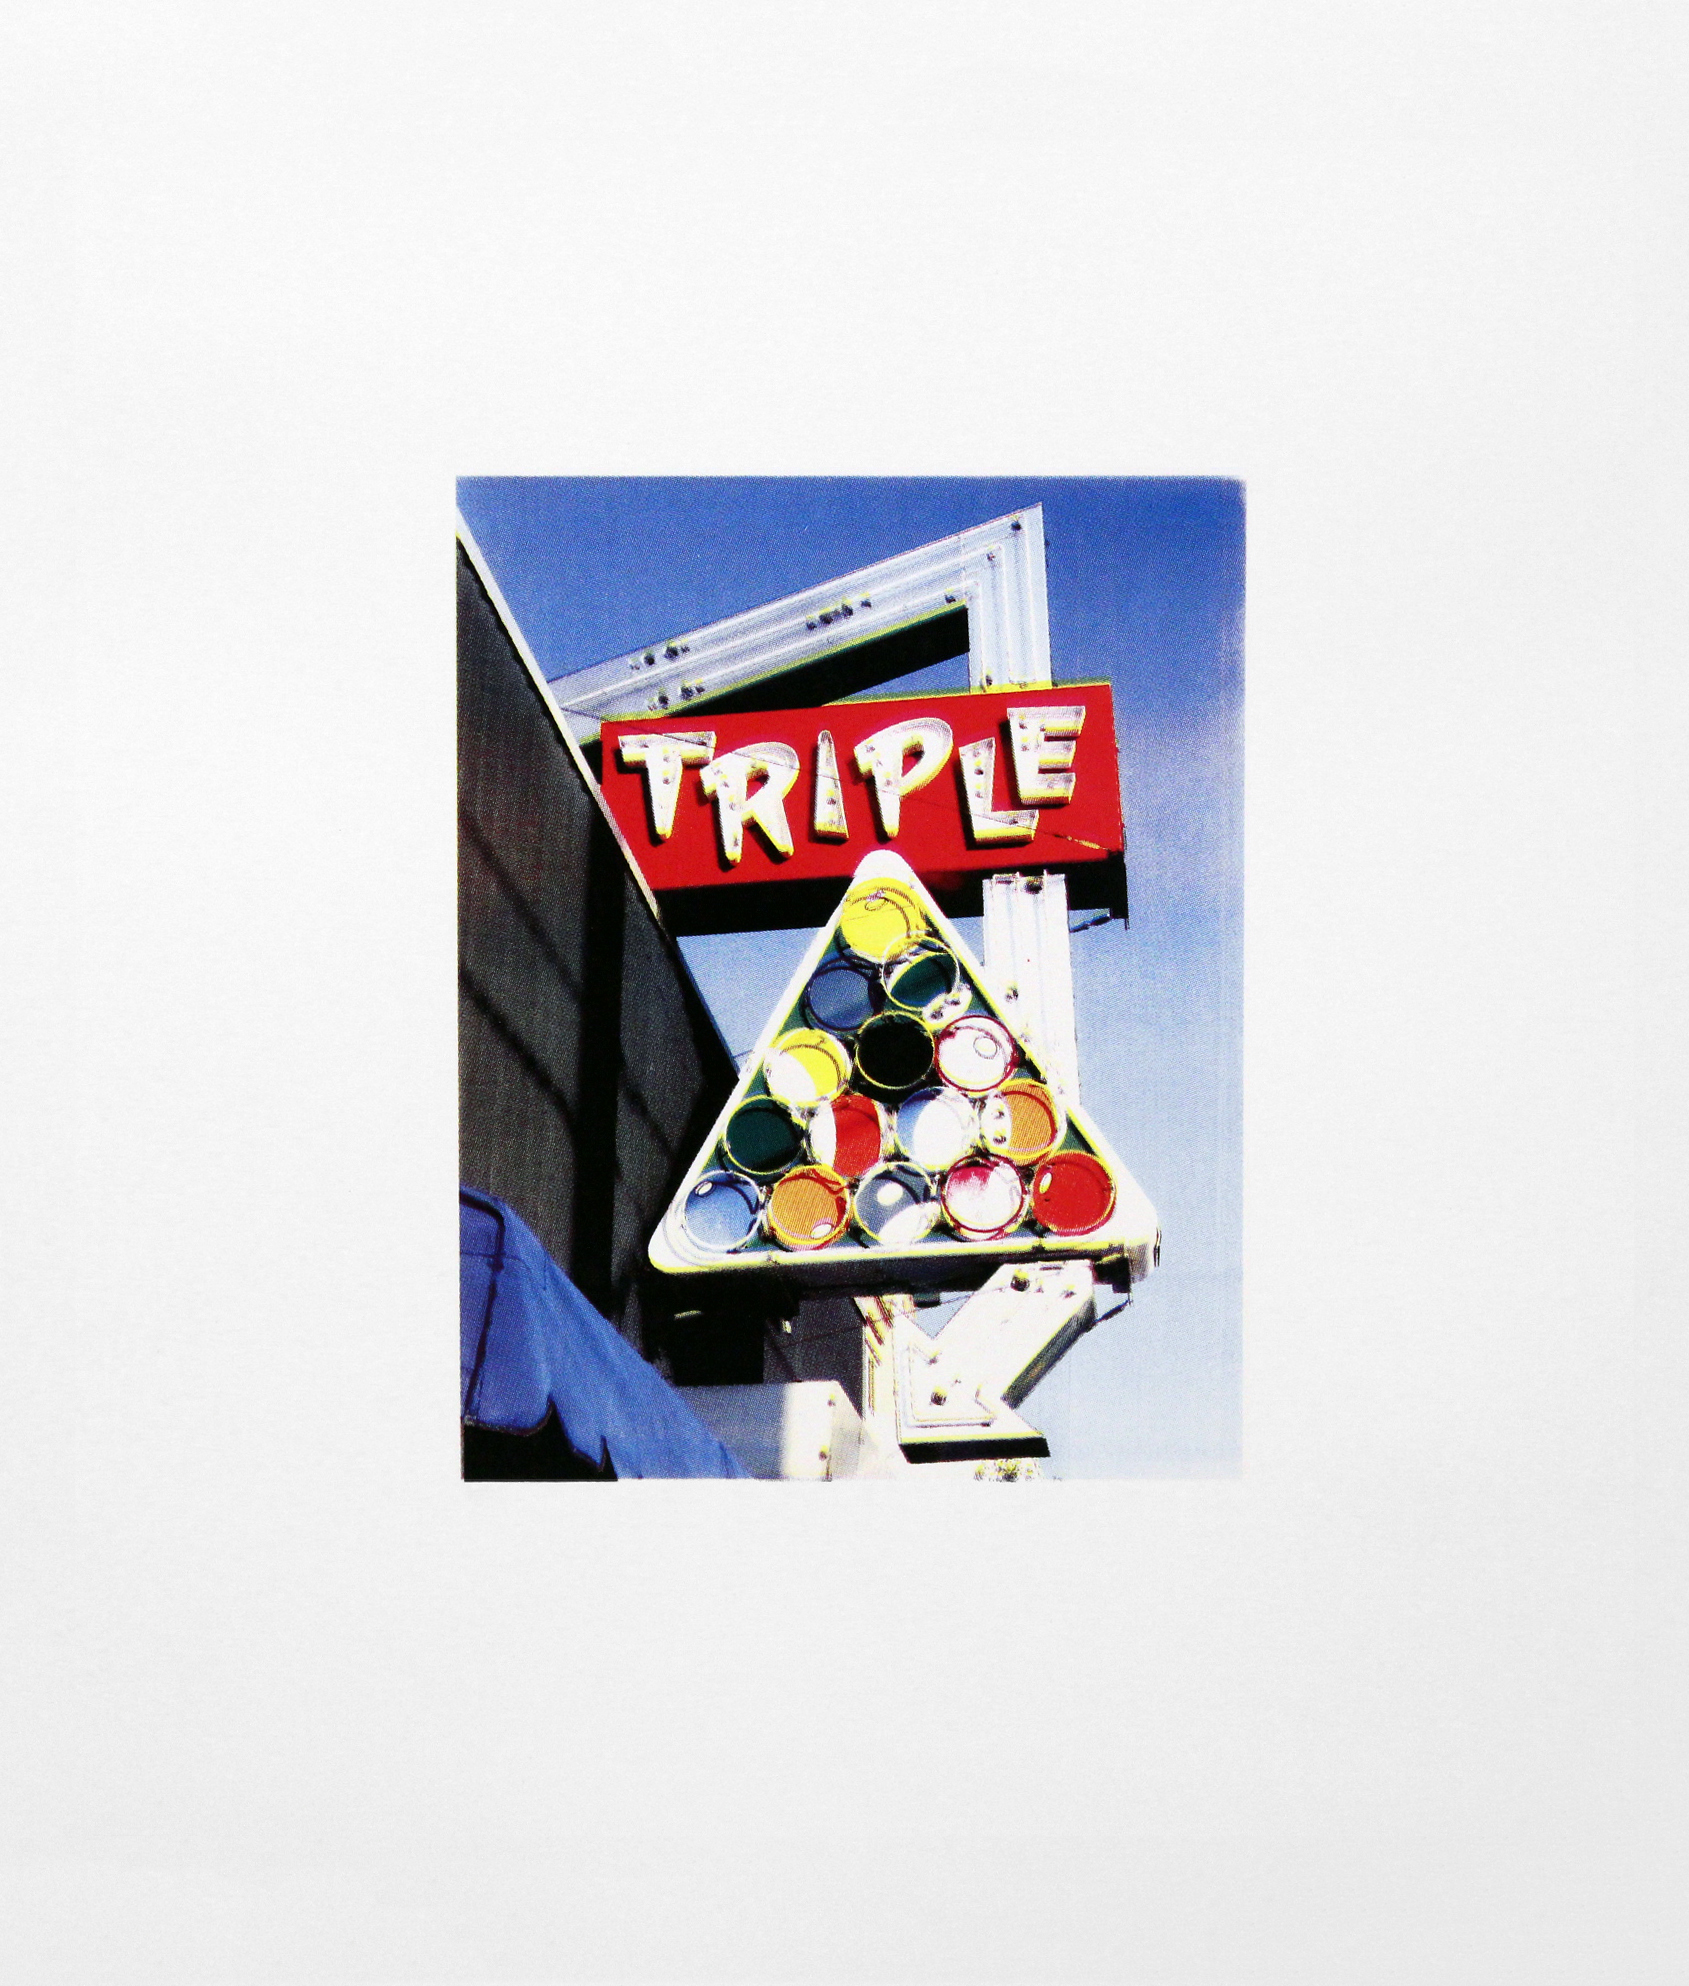   Triple, Richmond, Virginia ,&nbsp;Four Color Halftone Screen Print,&nbsp;18" x 24", 2011 